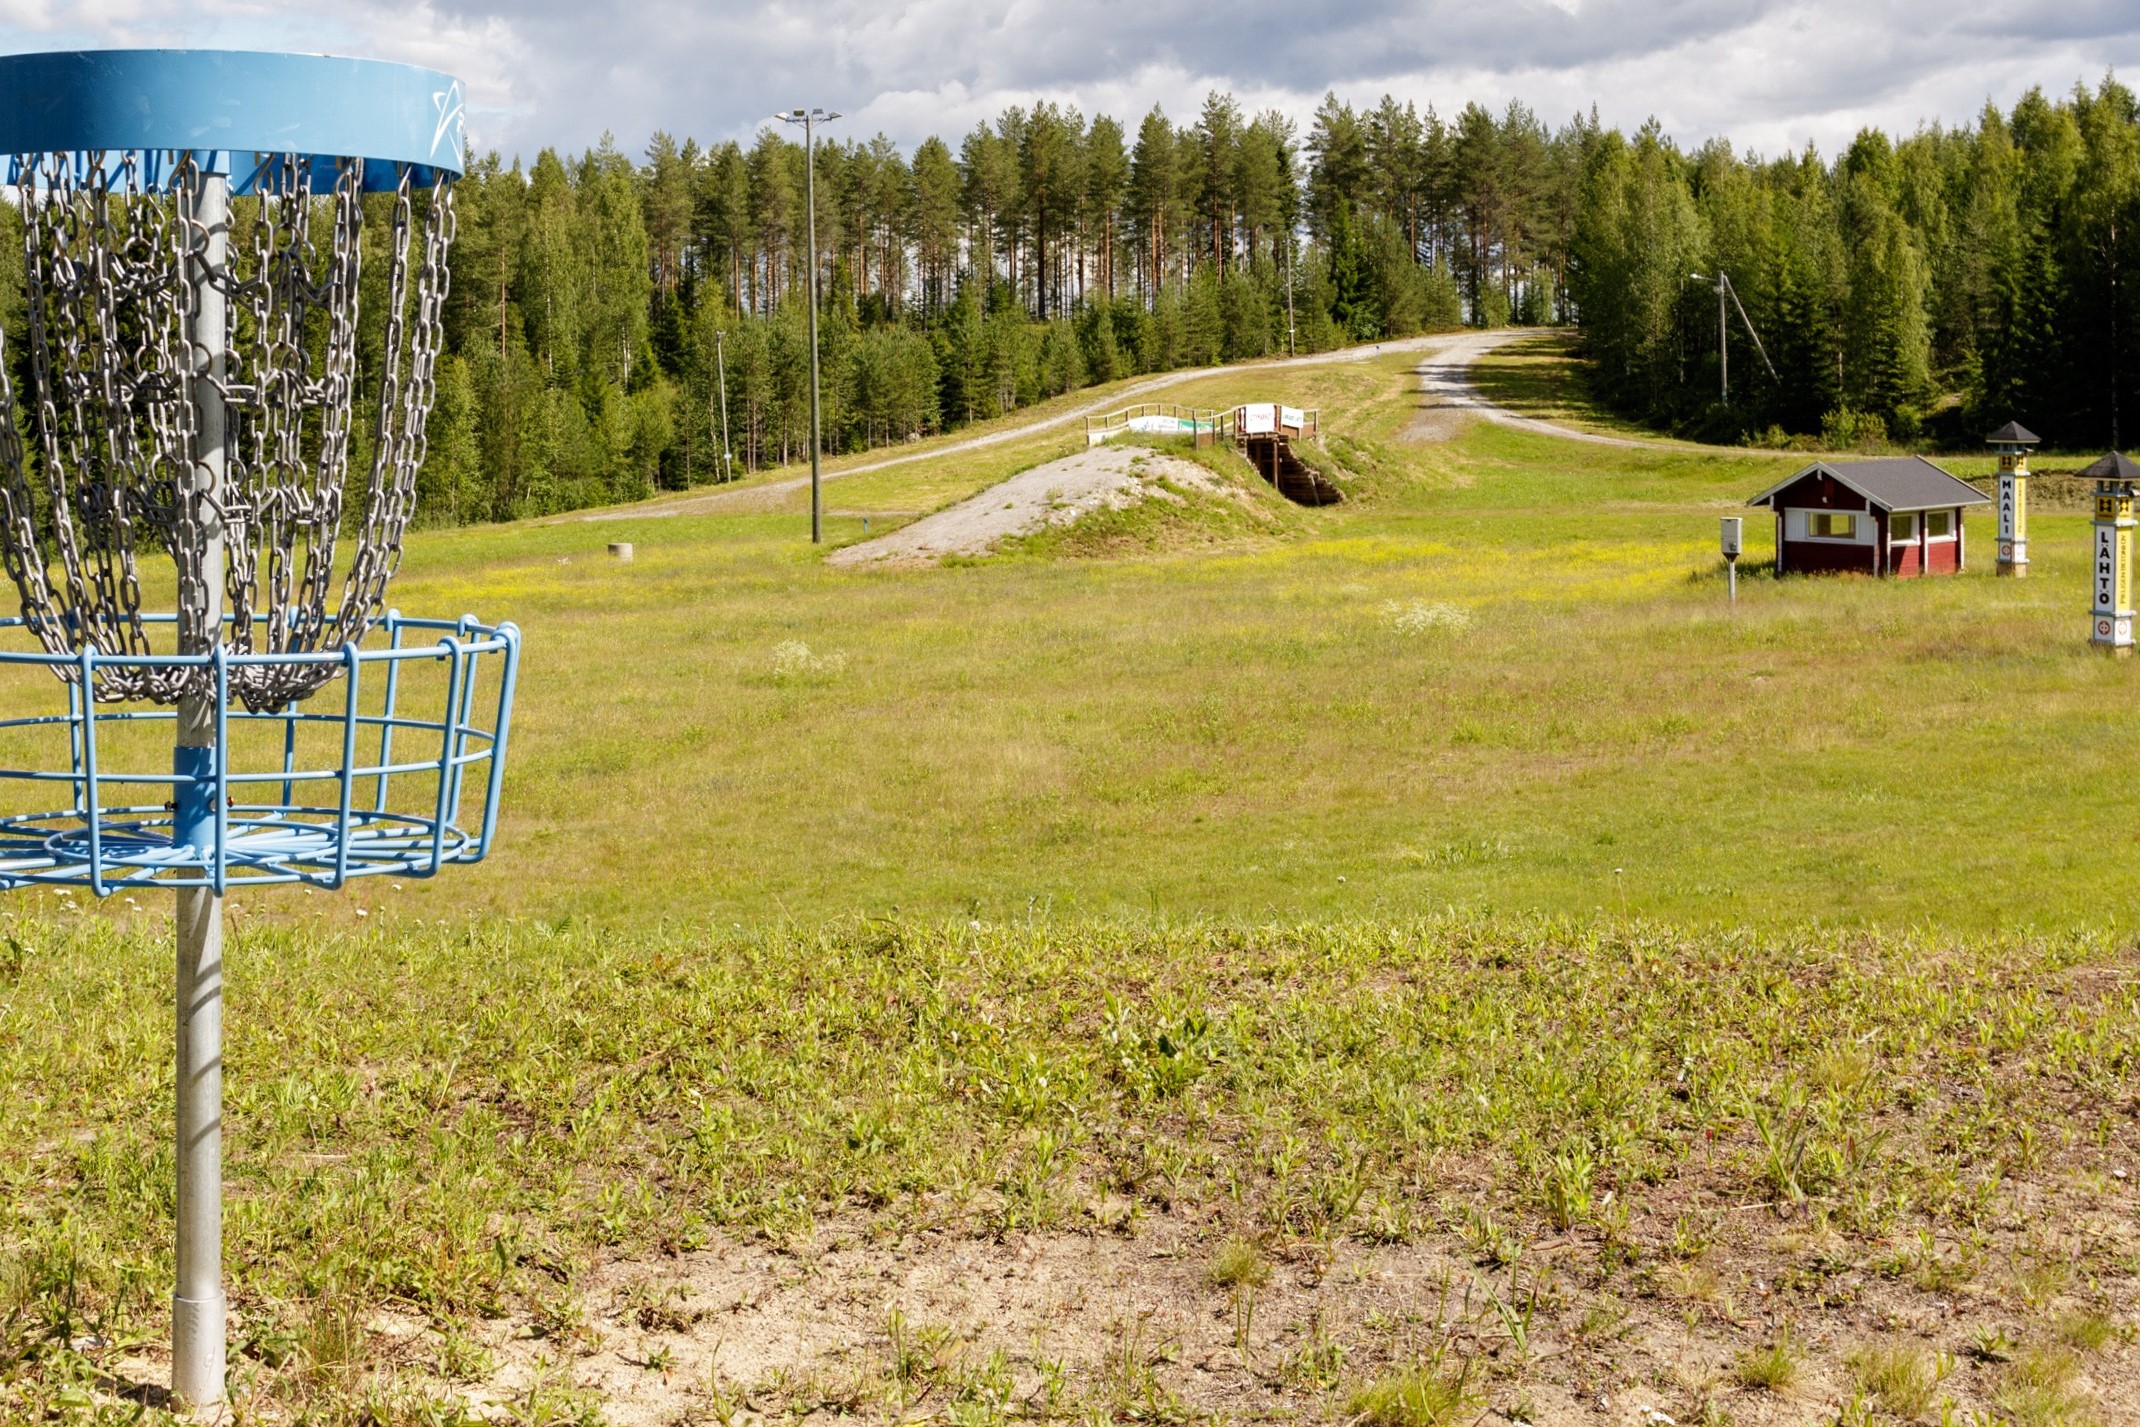 Frisbegolfkori ja hiihtokilpailujen lähtöalue kesällä.